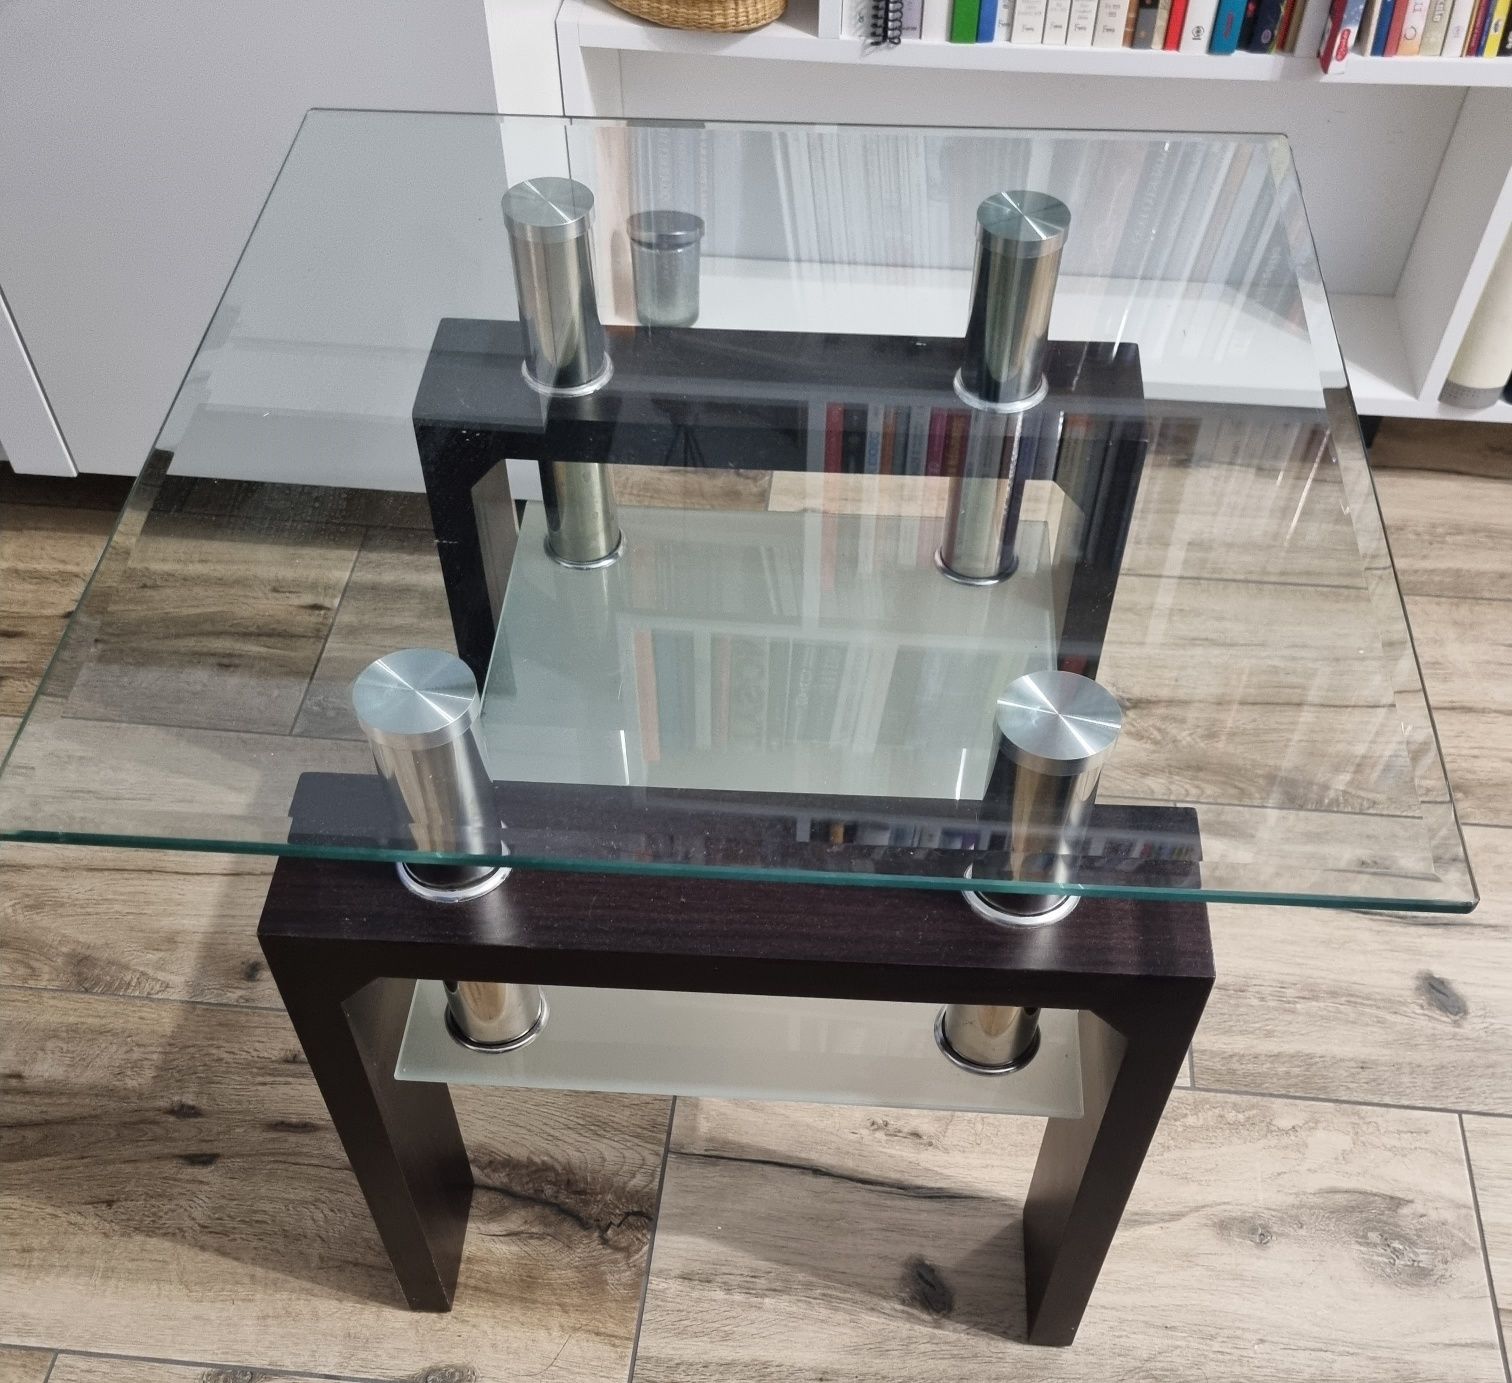 Stolik szklany z półką, stolik kawowy,blat:59,5 x 59,5cm, wys.55 cm